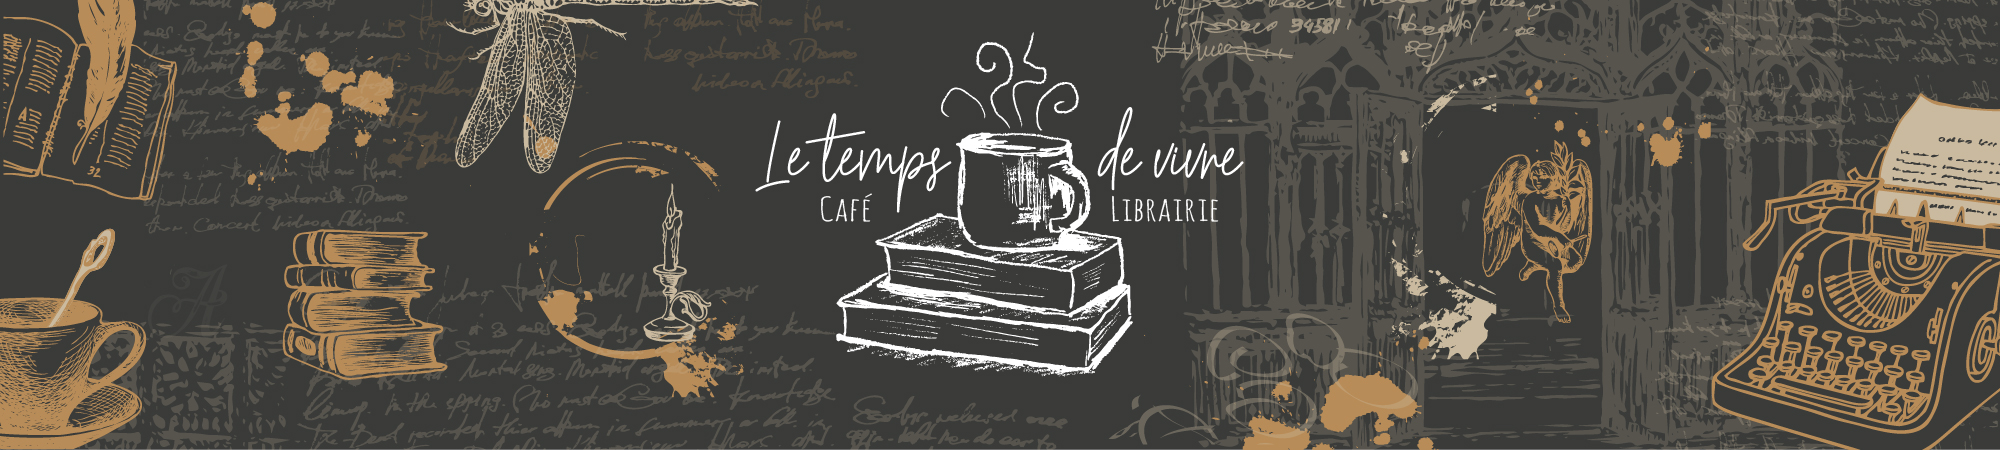 Le Temps de Vivre - Café-librairie